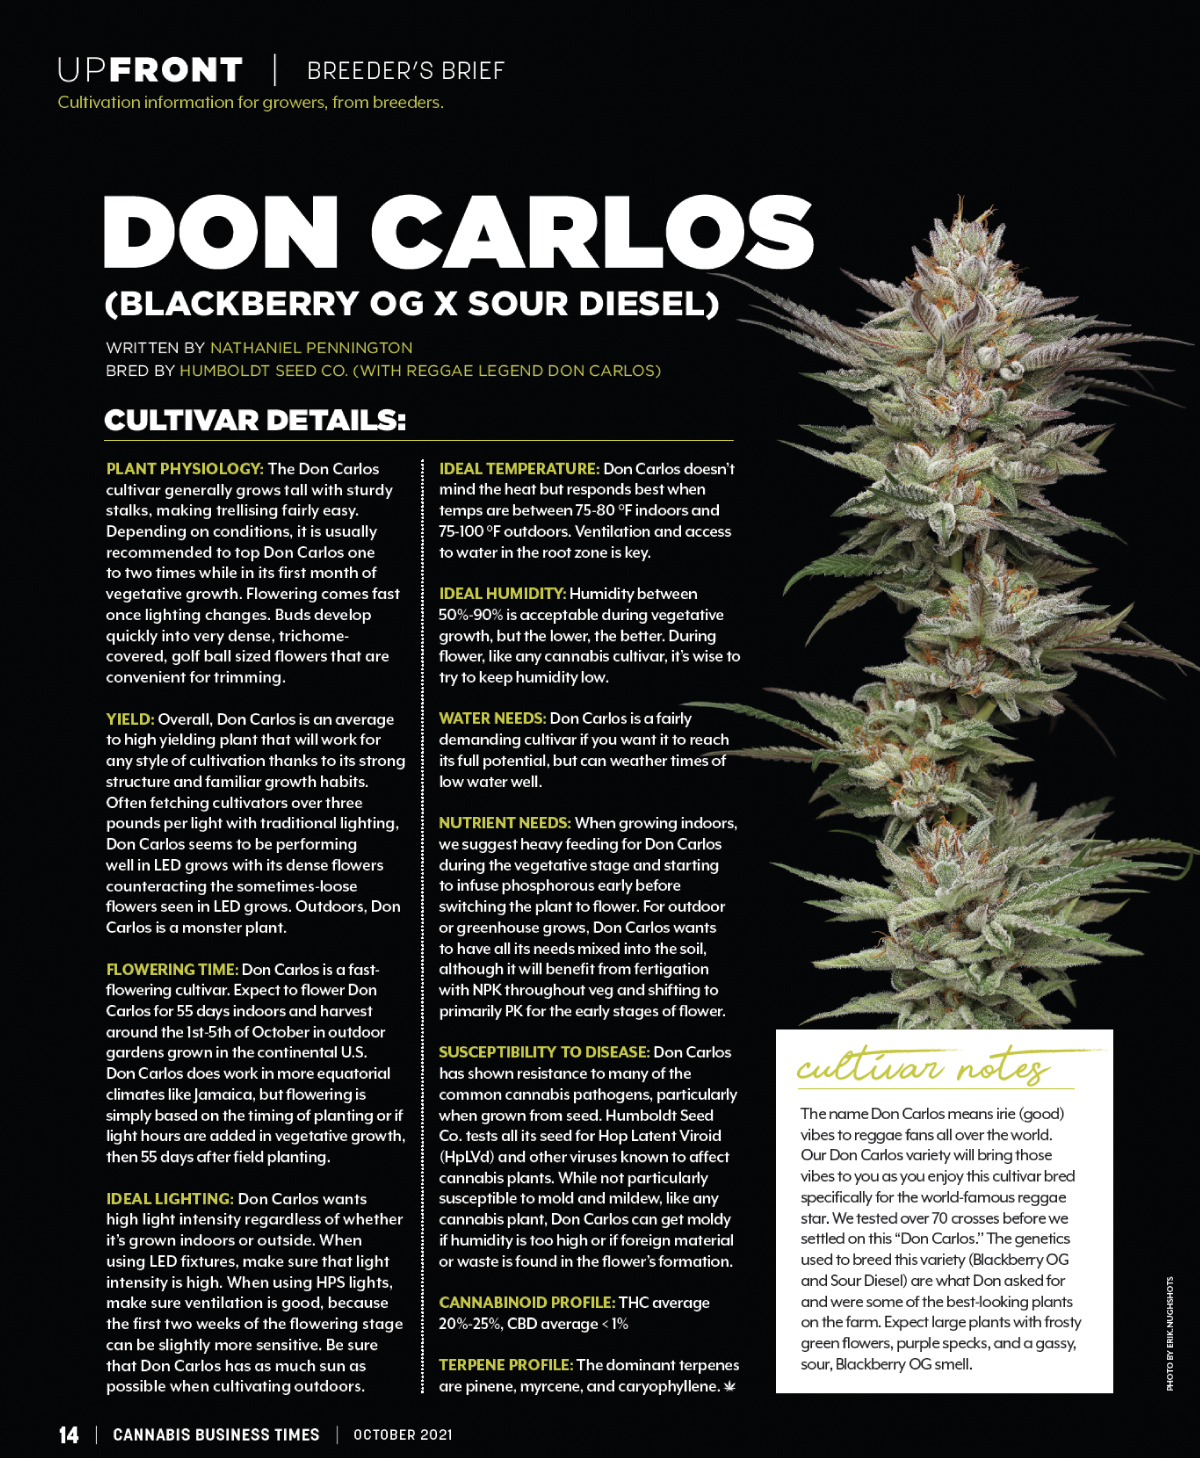 Cannabis Business Times - Don Carlos